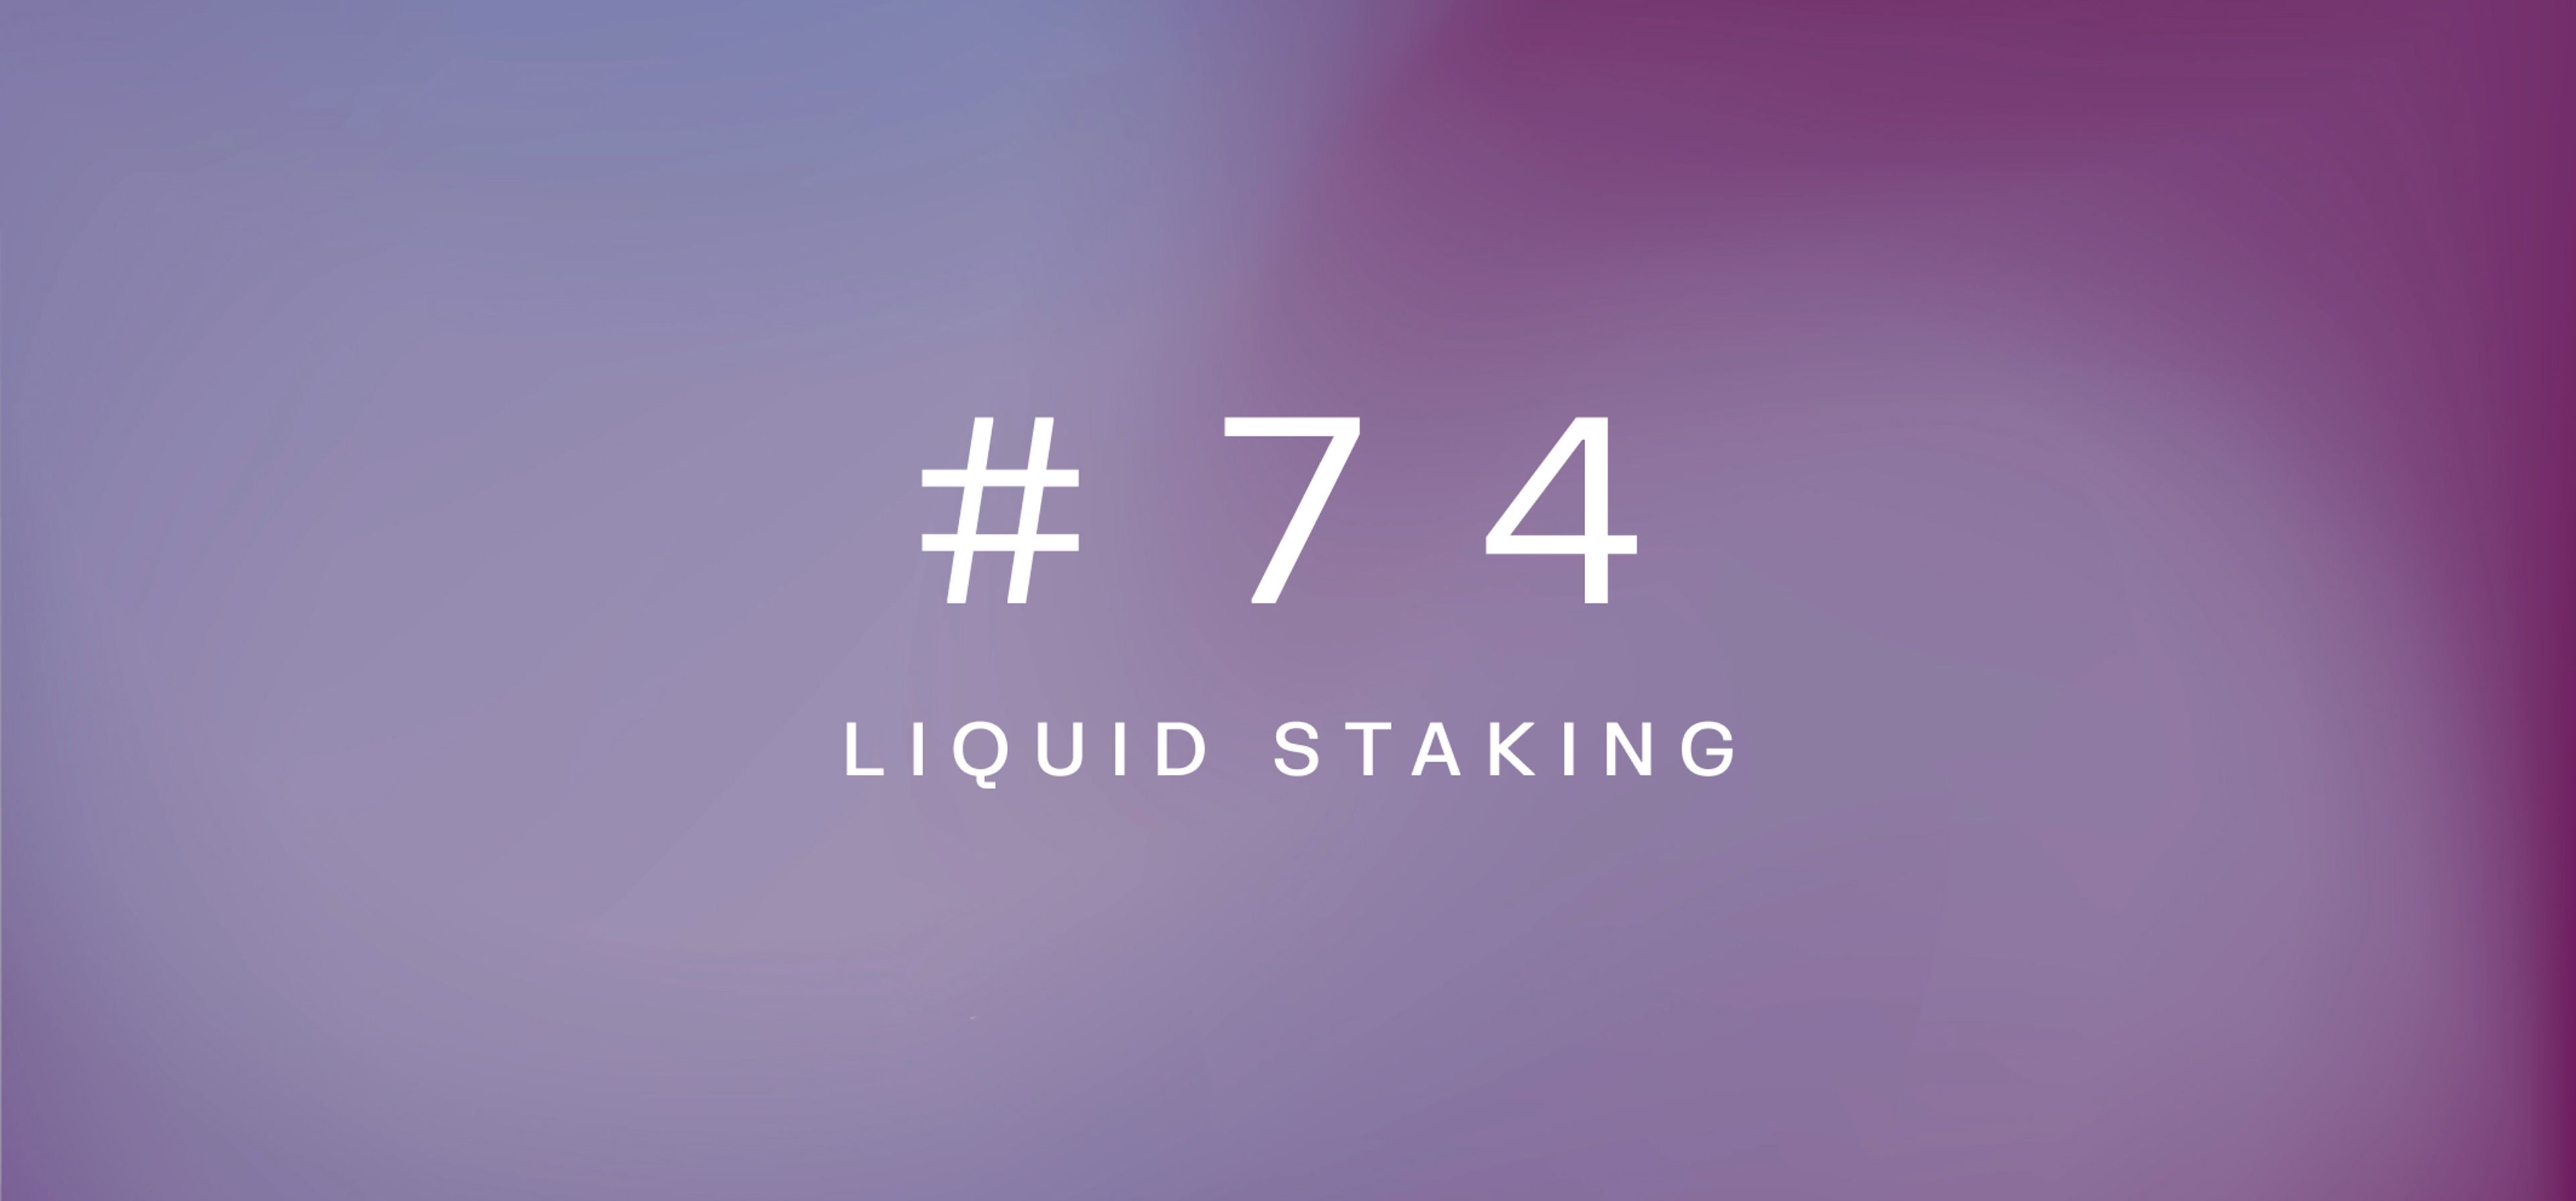 Liquid staking – Weekly fundamentals #74